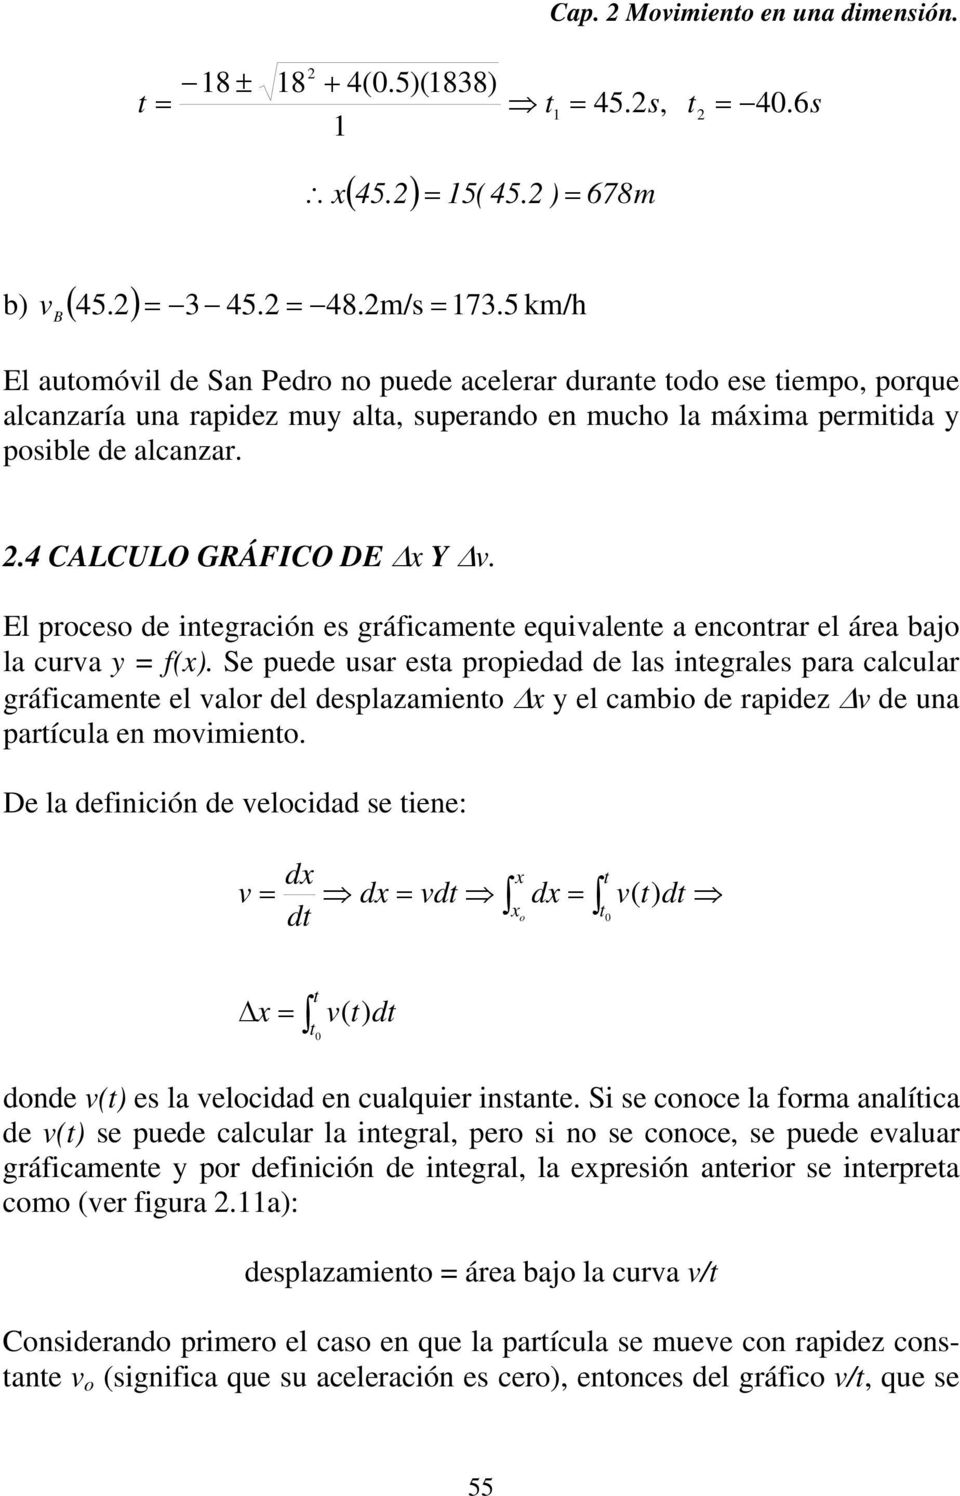 El poceso de integación es gáficamente equivalente a enconta el áea bajo la cuva y = f(x).